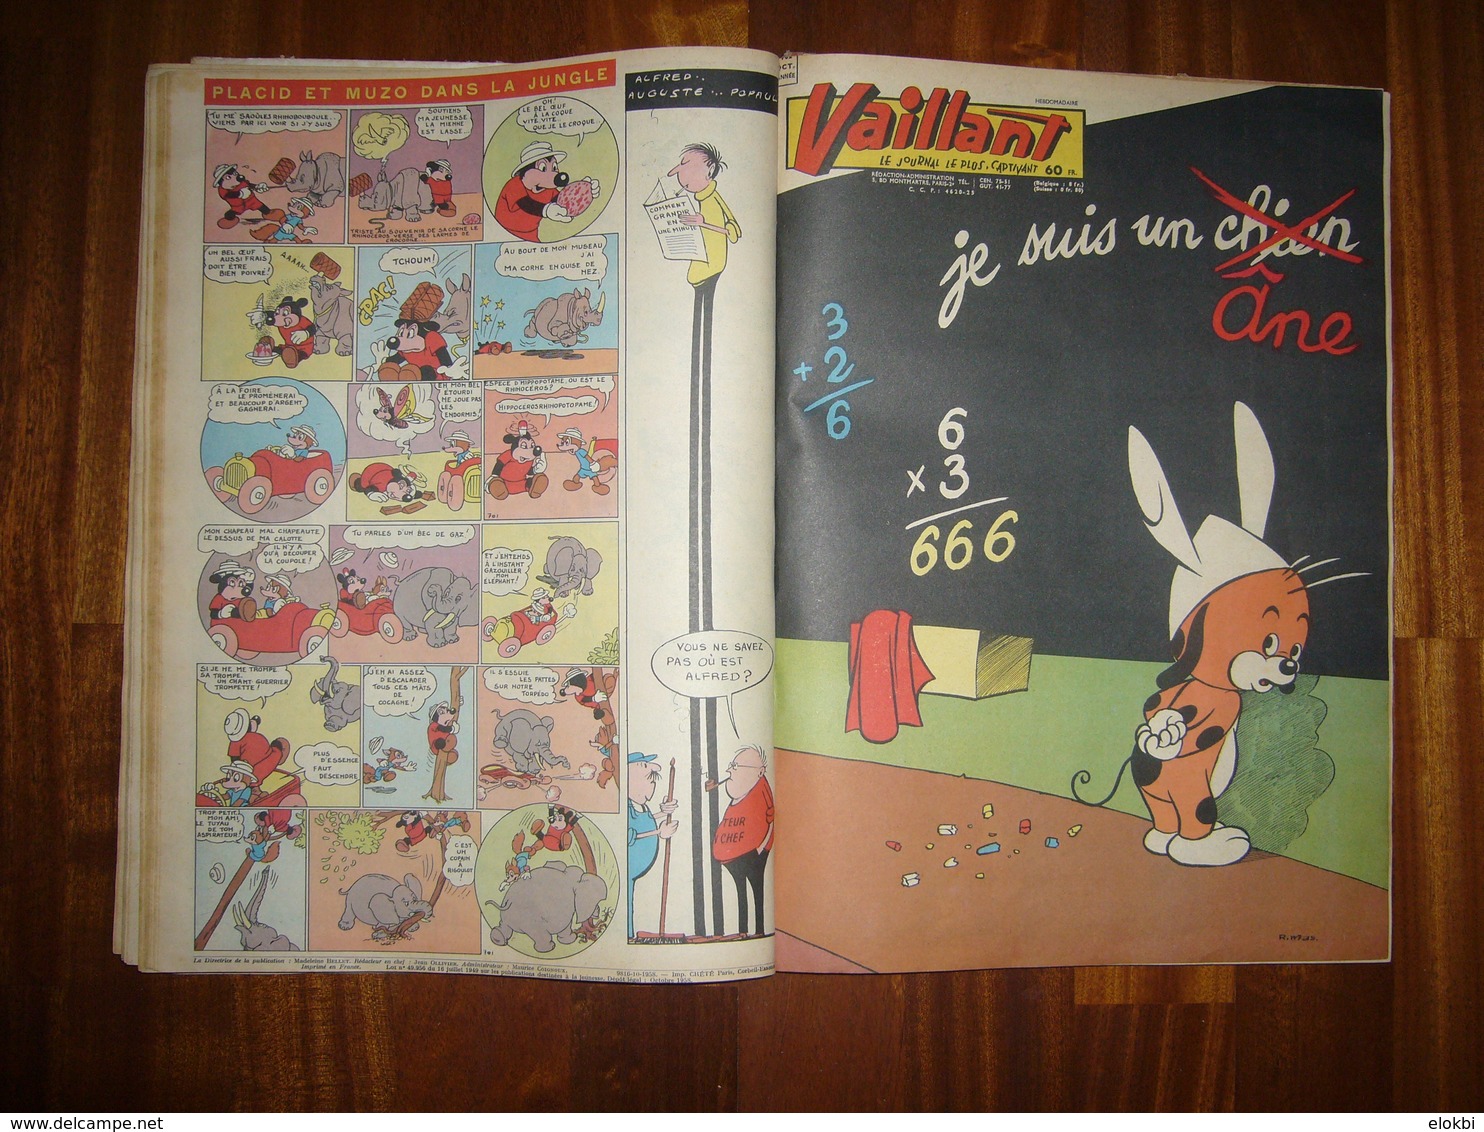 Album Vaillant n° 10 [Série n°2] Revues n° 695 à 707 incluses de l'année 1958 - Voir description détaillée